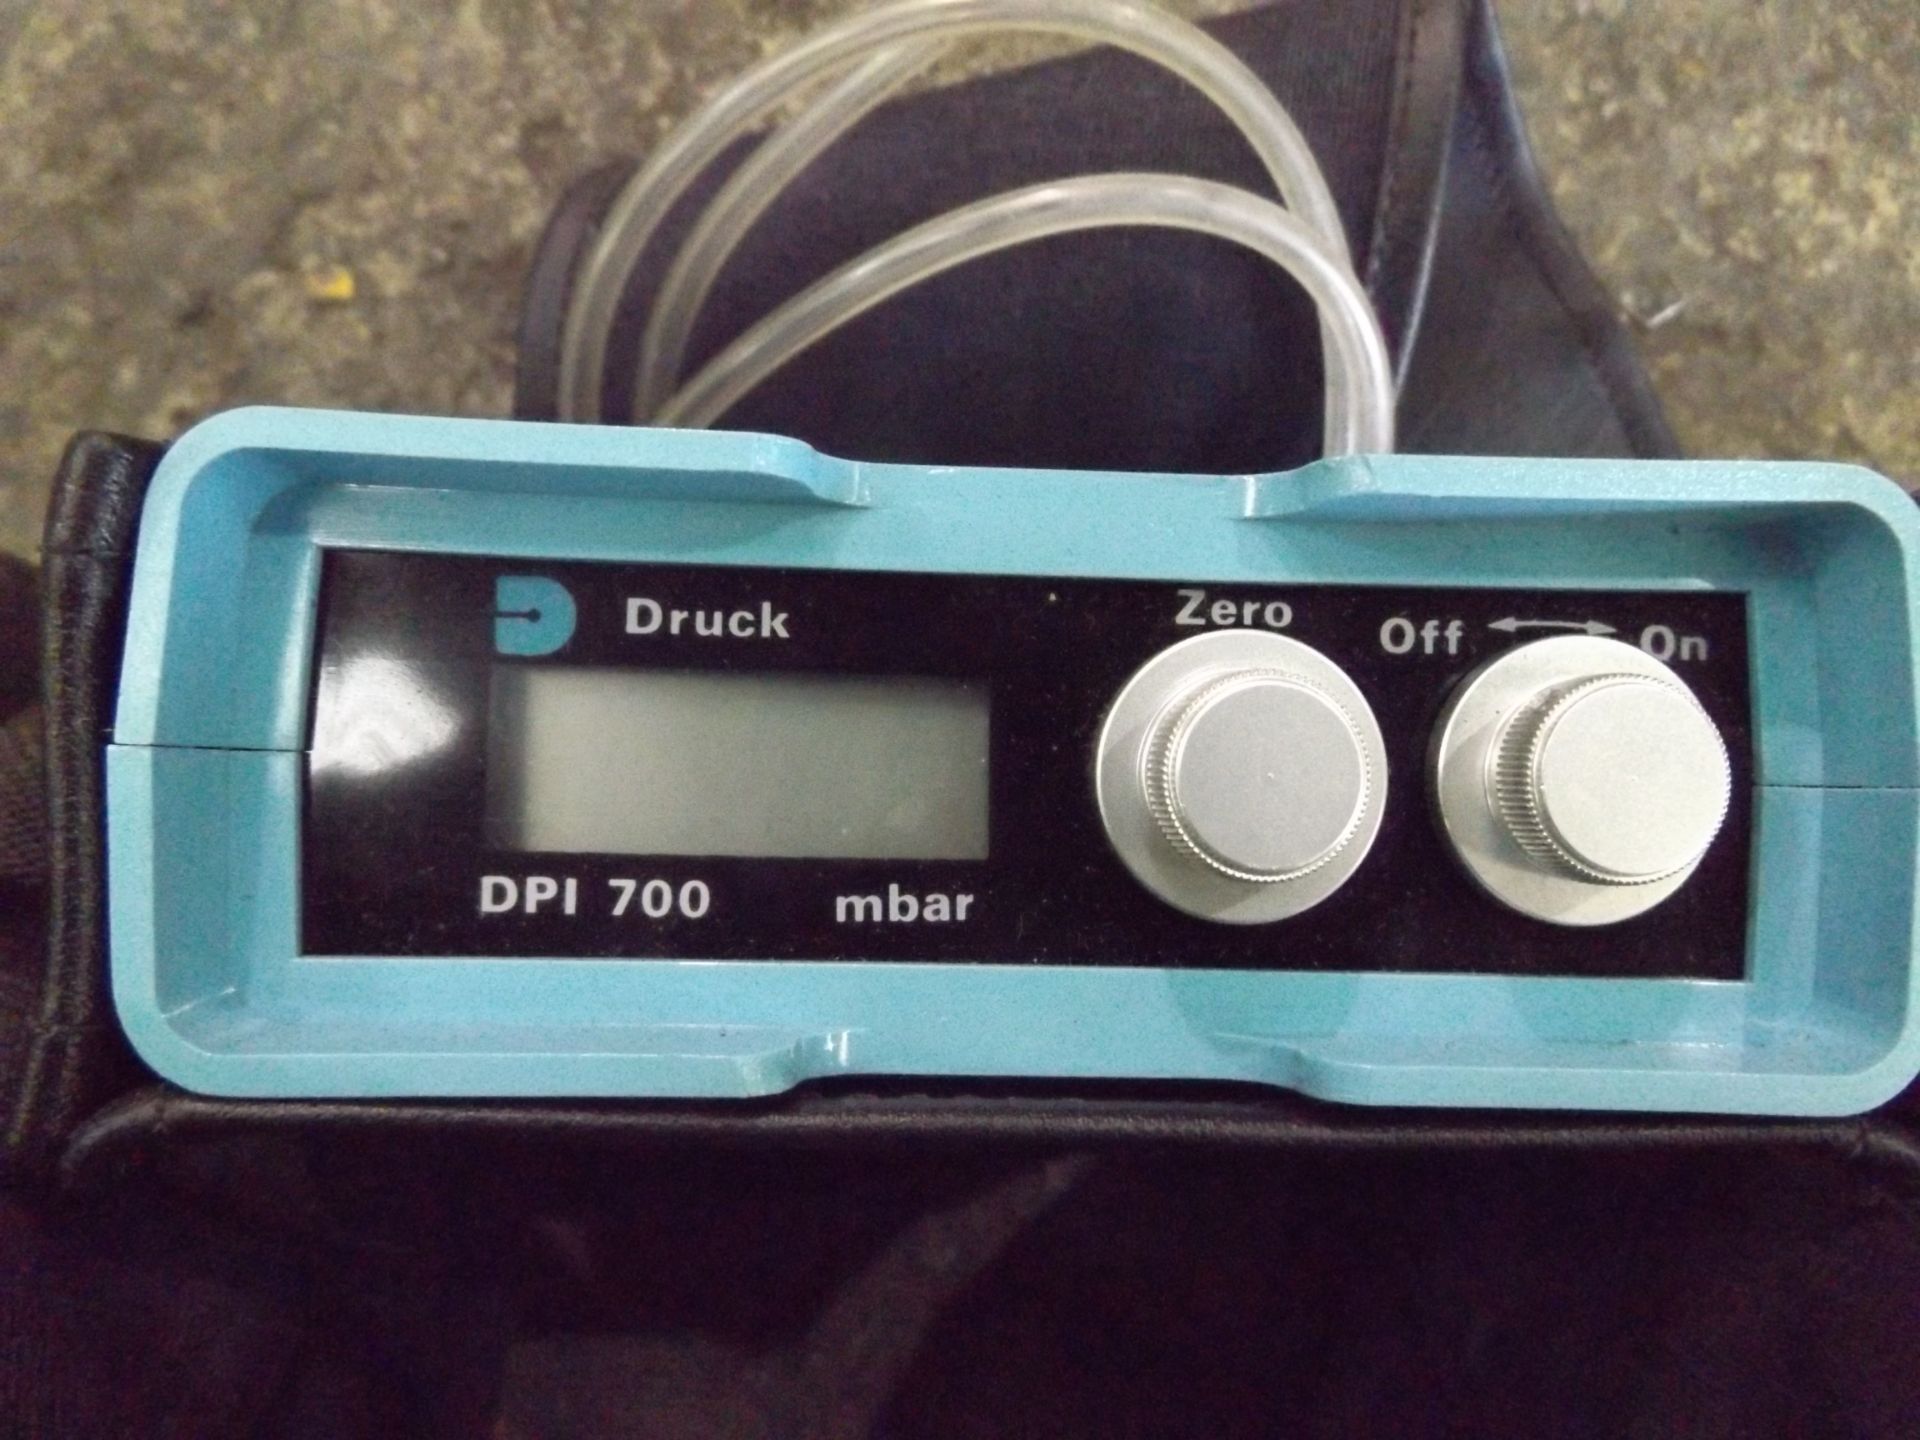 Druck DPI700 Pocket Digital Pressure Gauge - Image 2 of 4